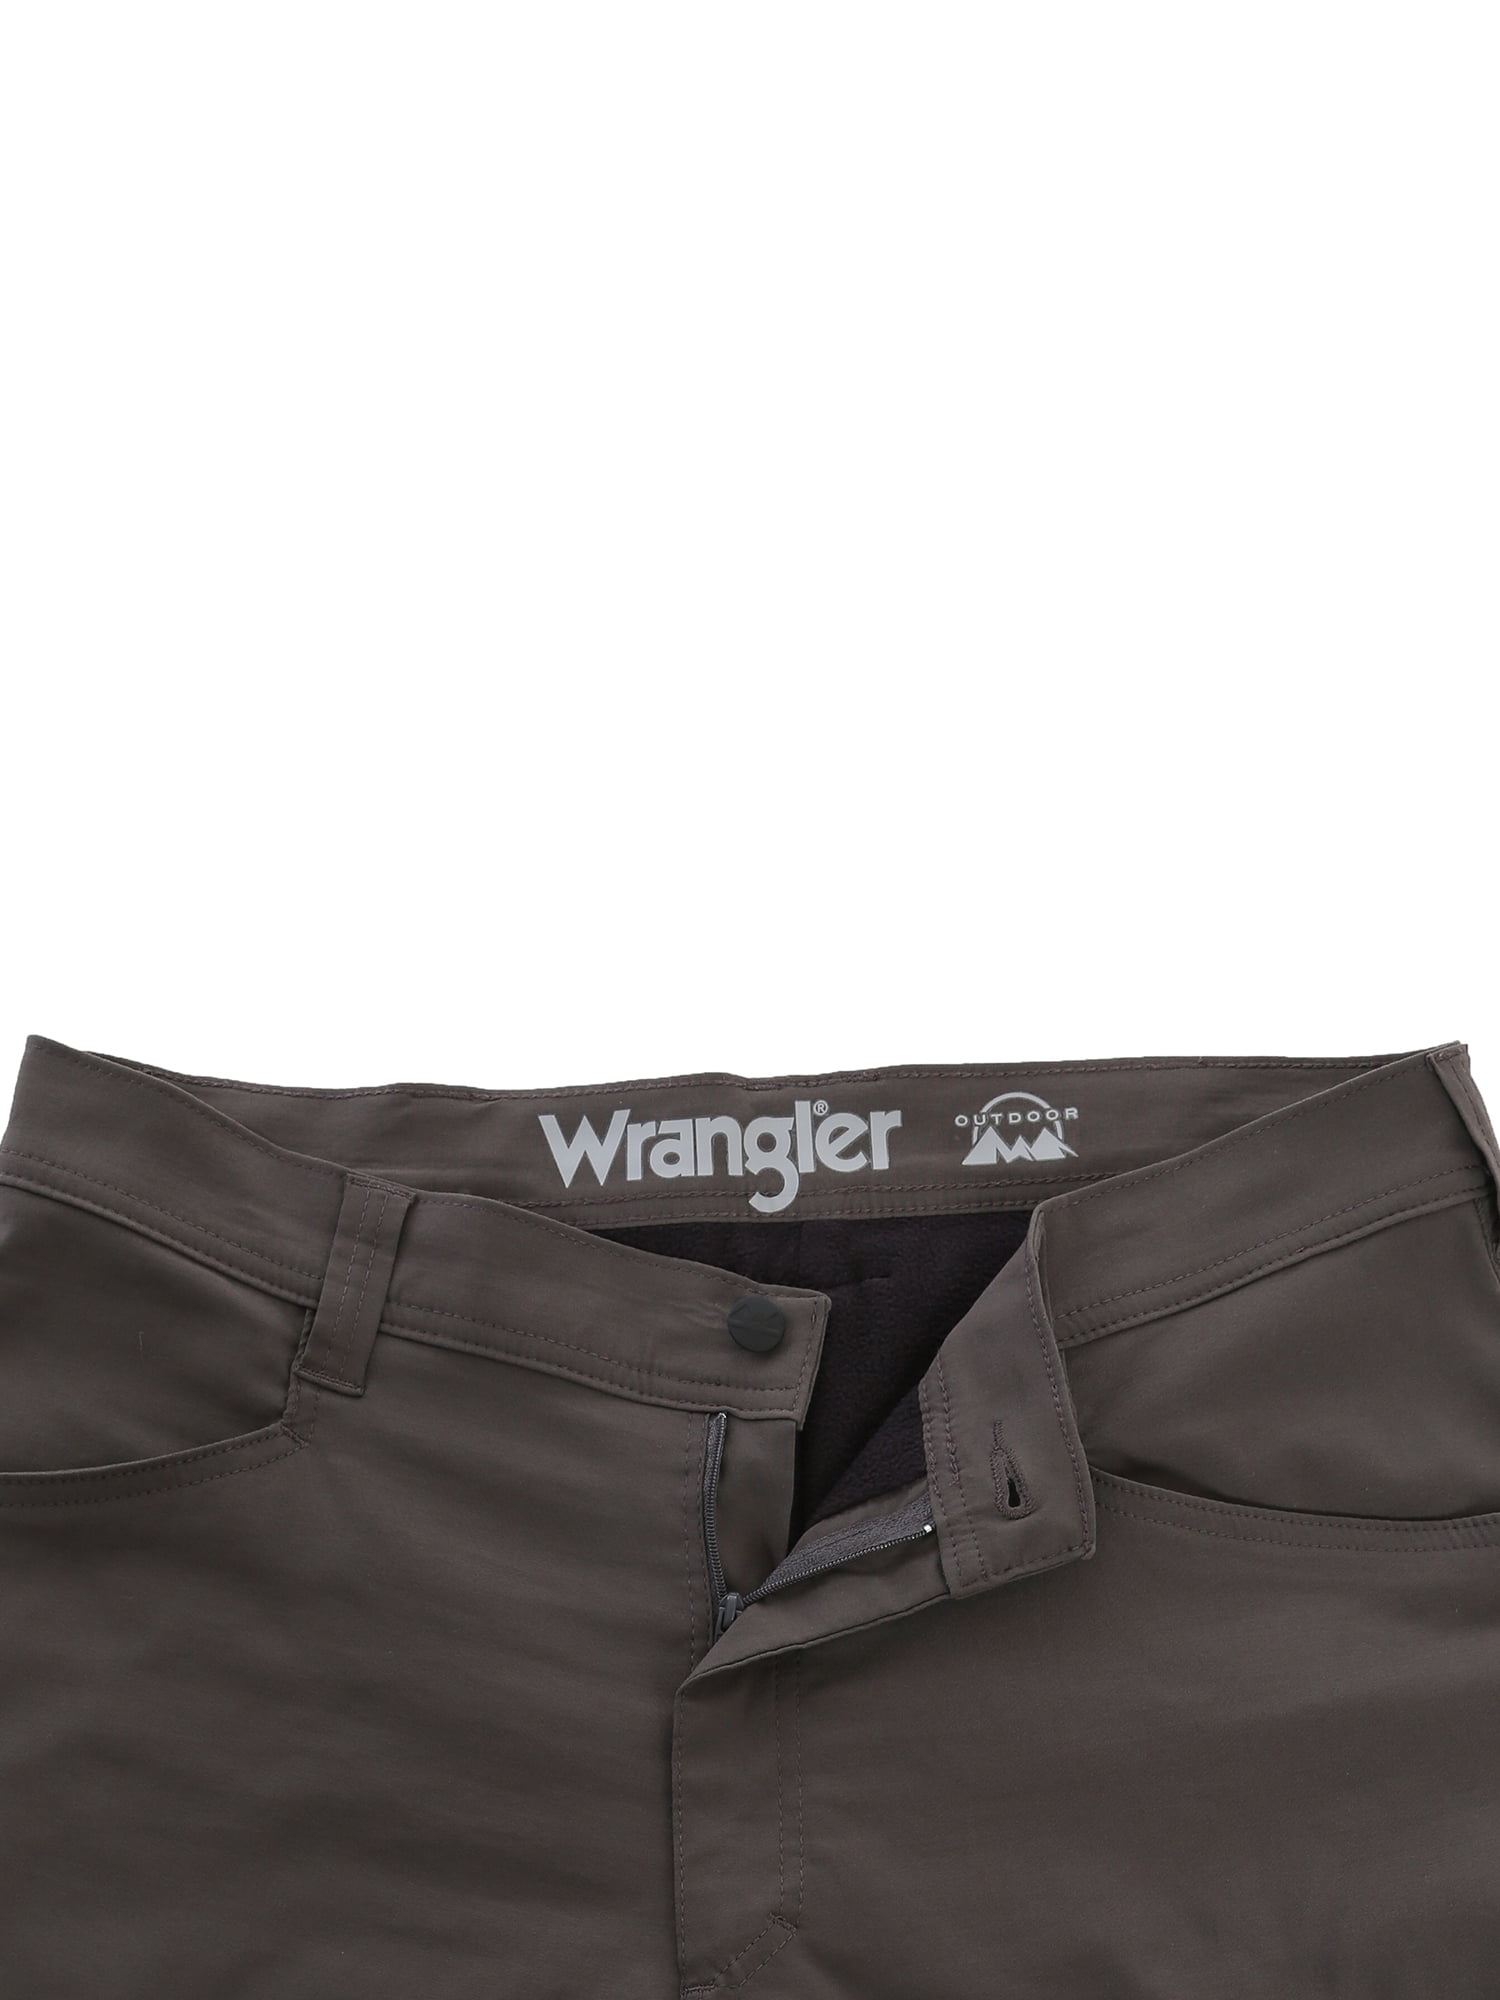 wrangler fleece lined cargo pants walmart